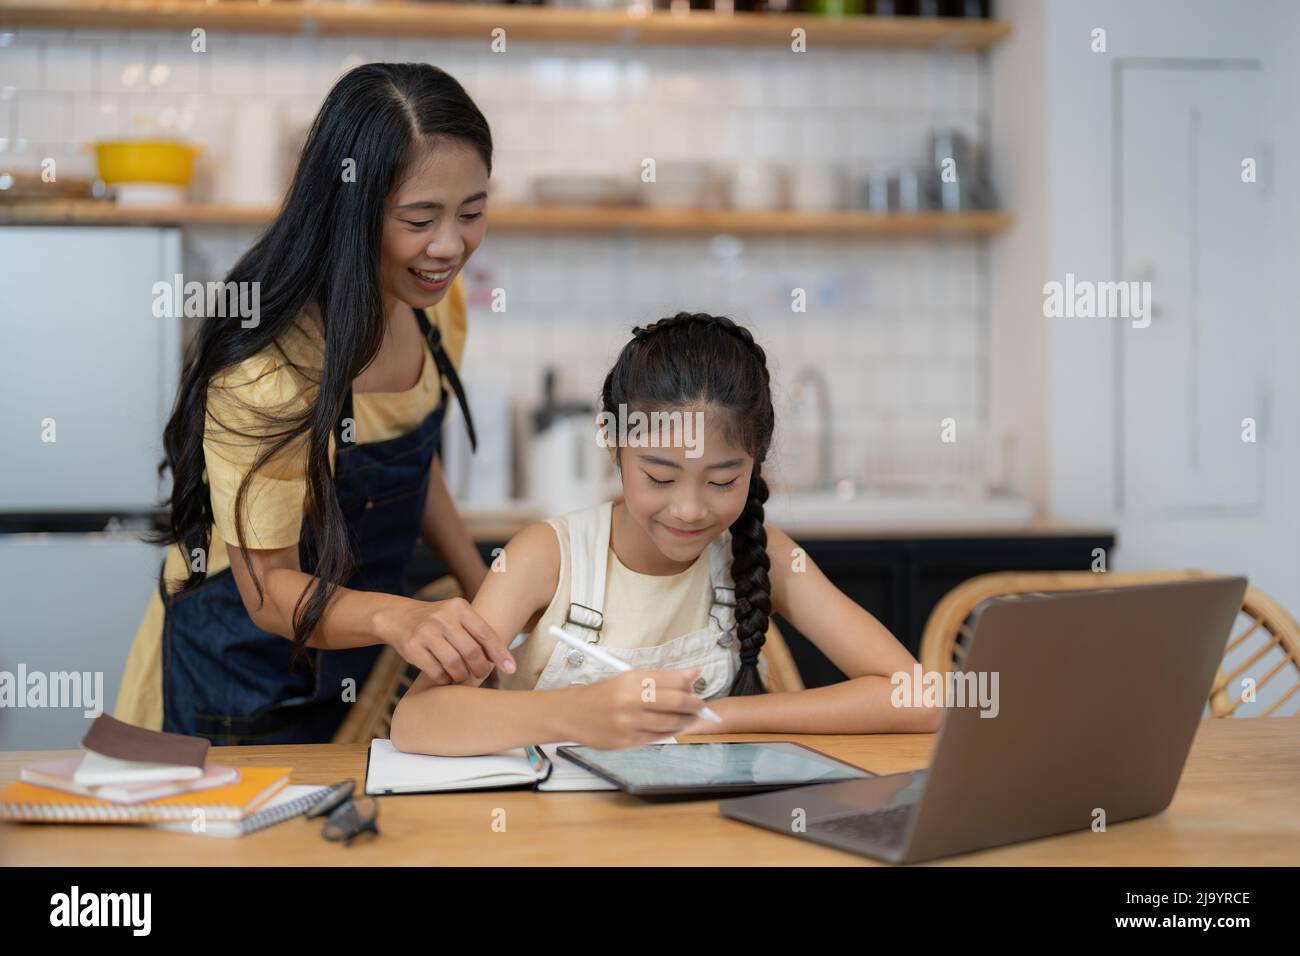 Mère asiatique et petite fille s'assoient au bureau dans la cuisine étudiant en ligne ensemble, maman biraciale et petite fille enfant écrire à la main, faire des devoirs, apprendre Banque D'Images